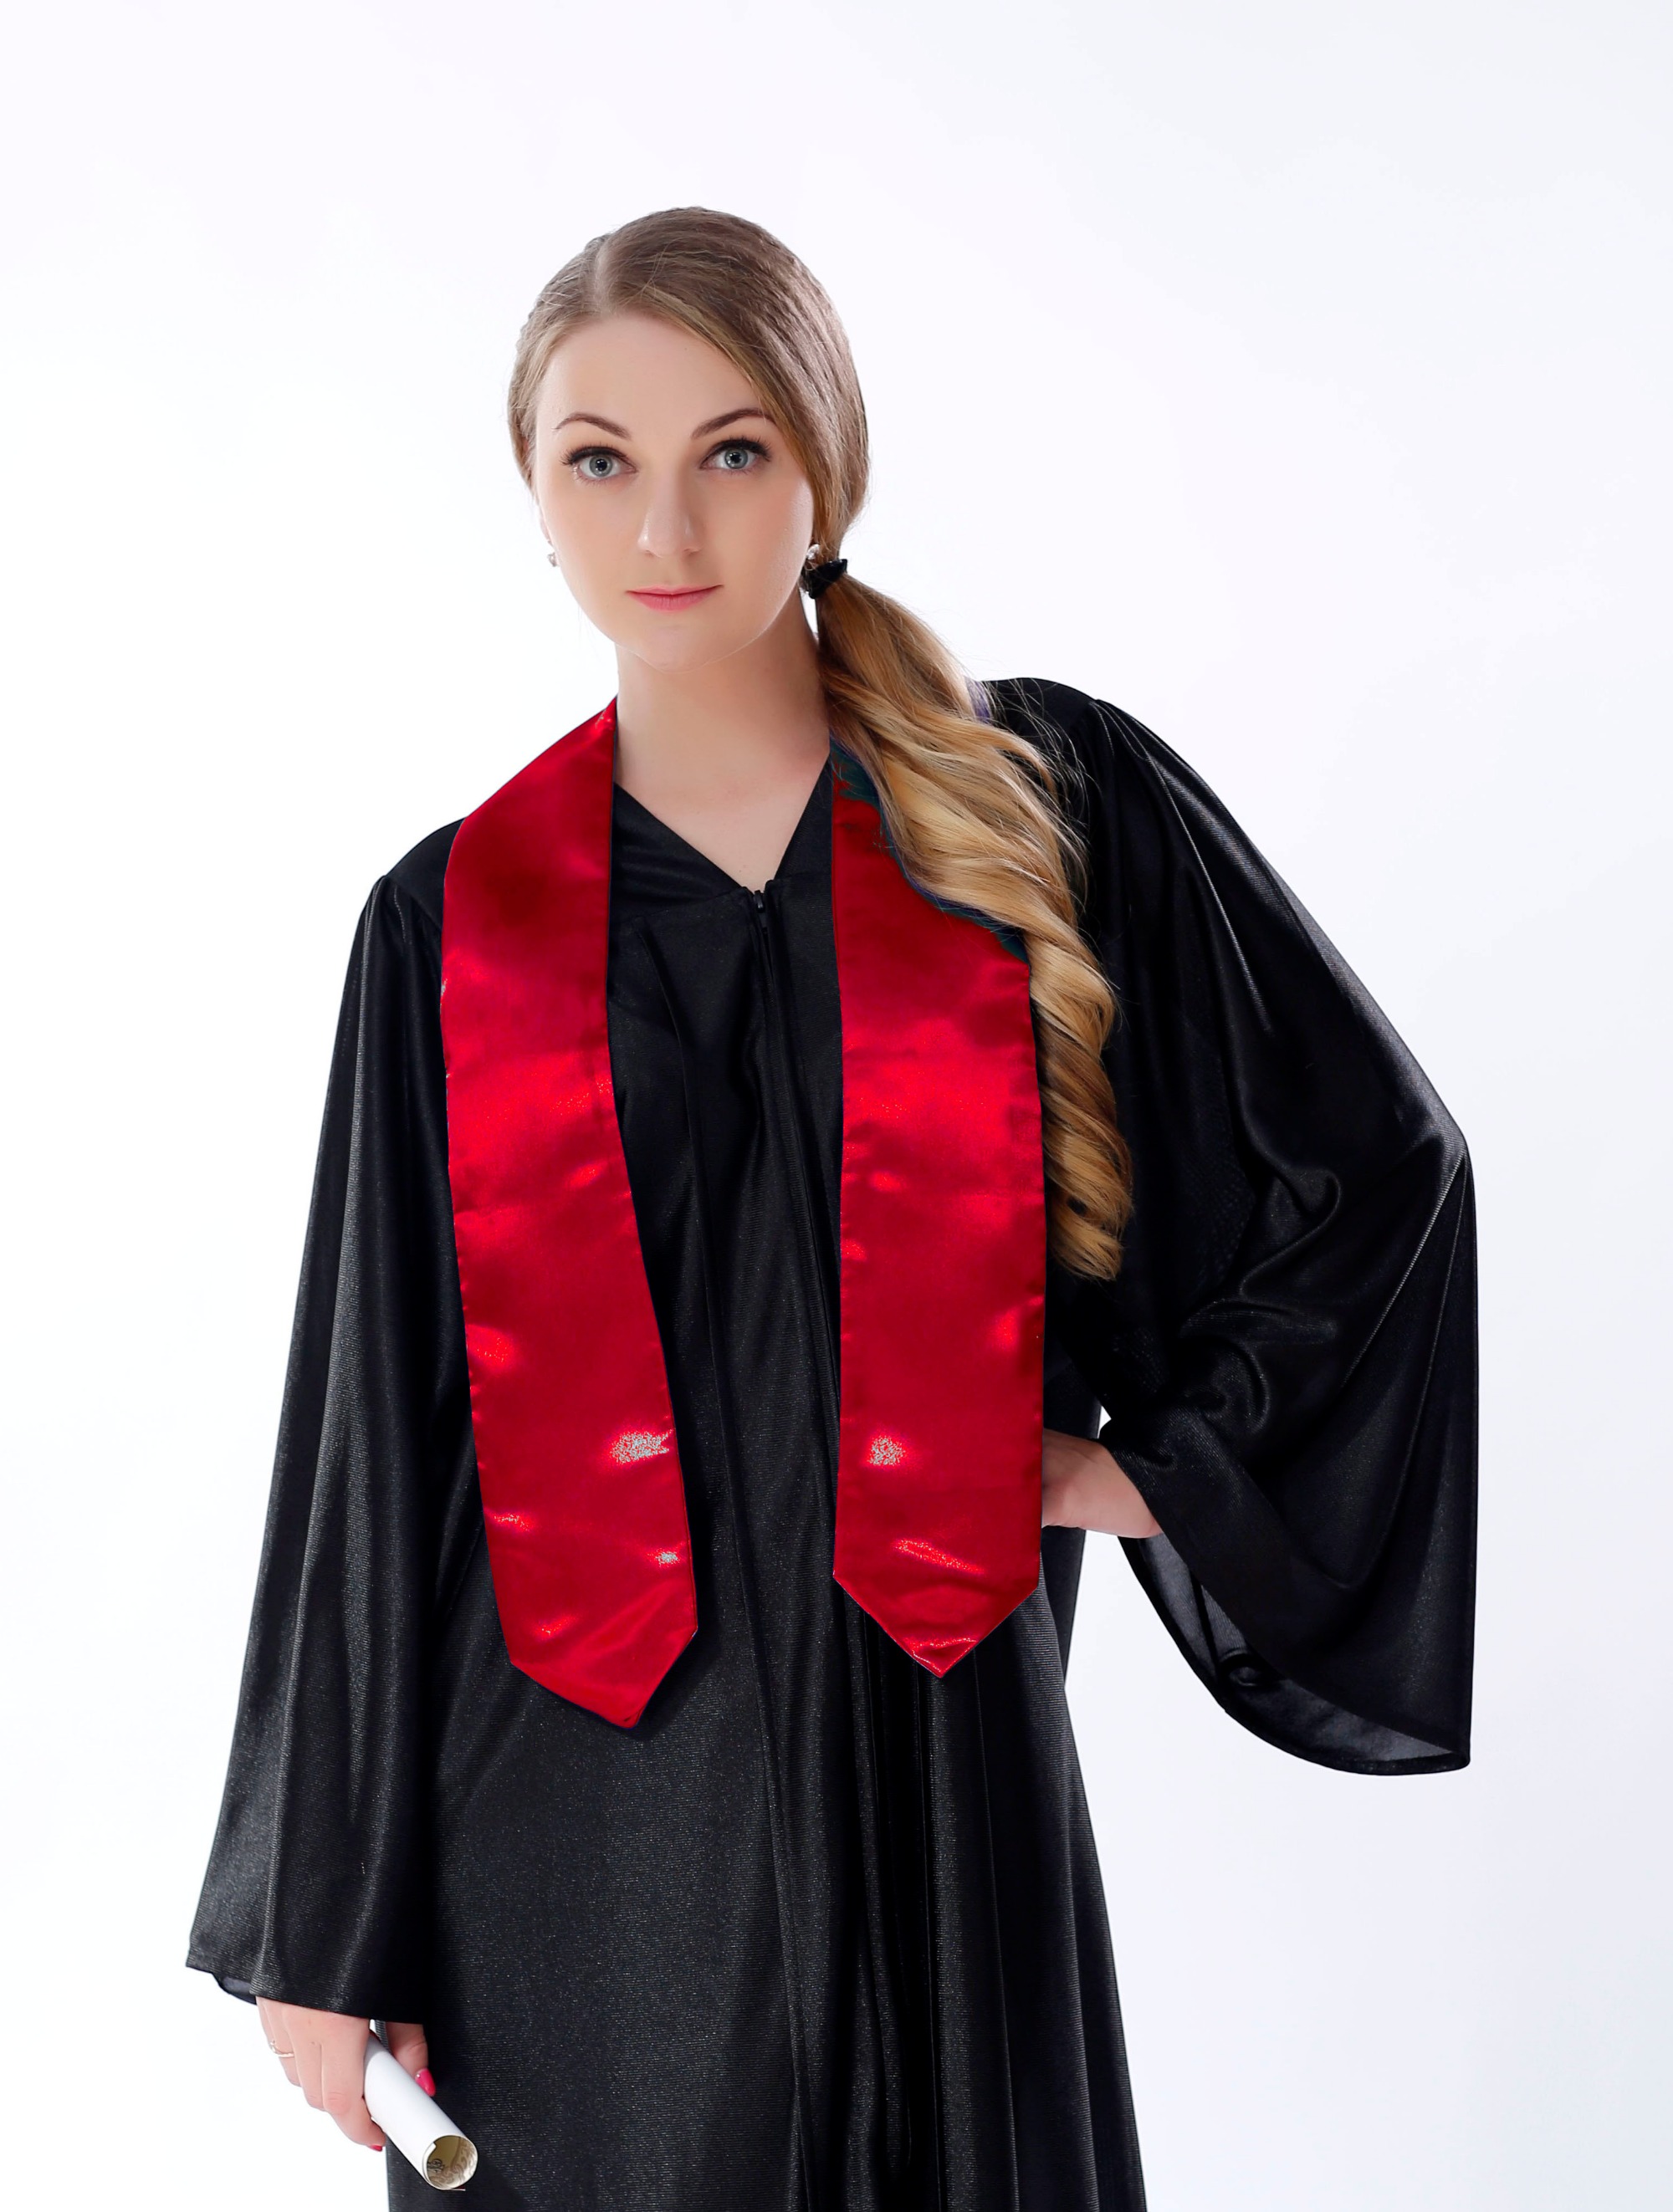 unisex-adult-plain-graduation-stole-red